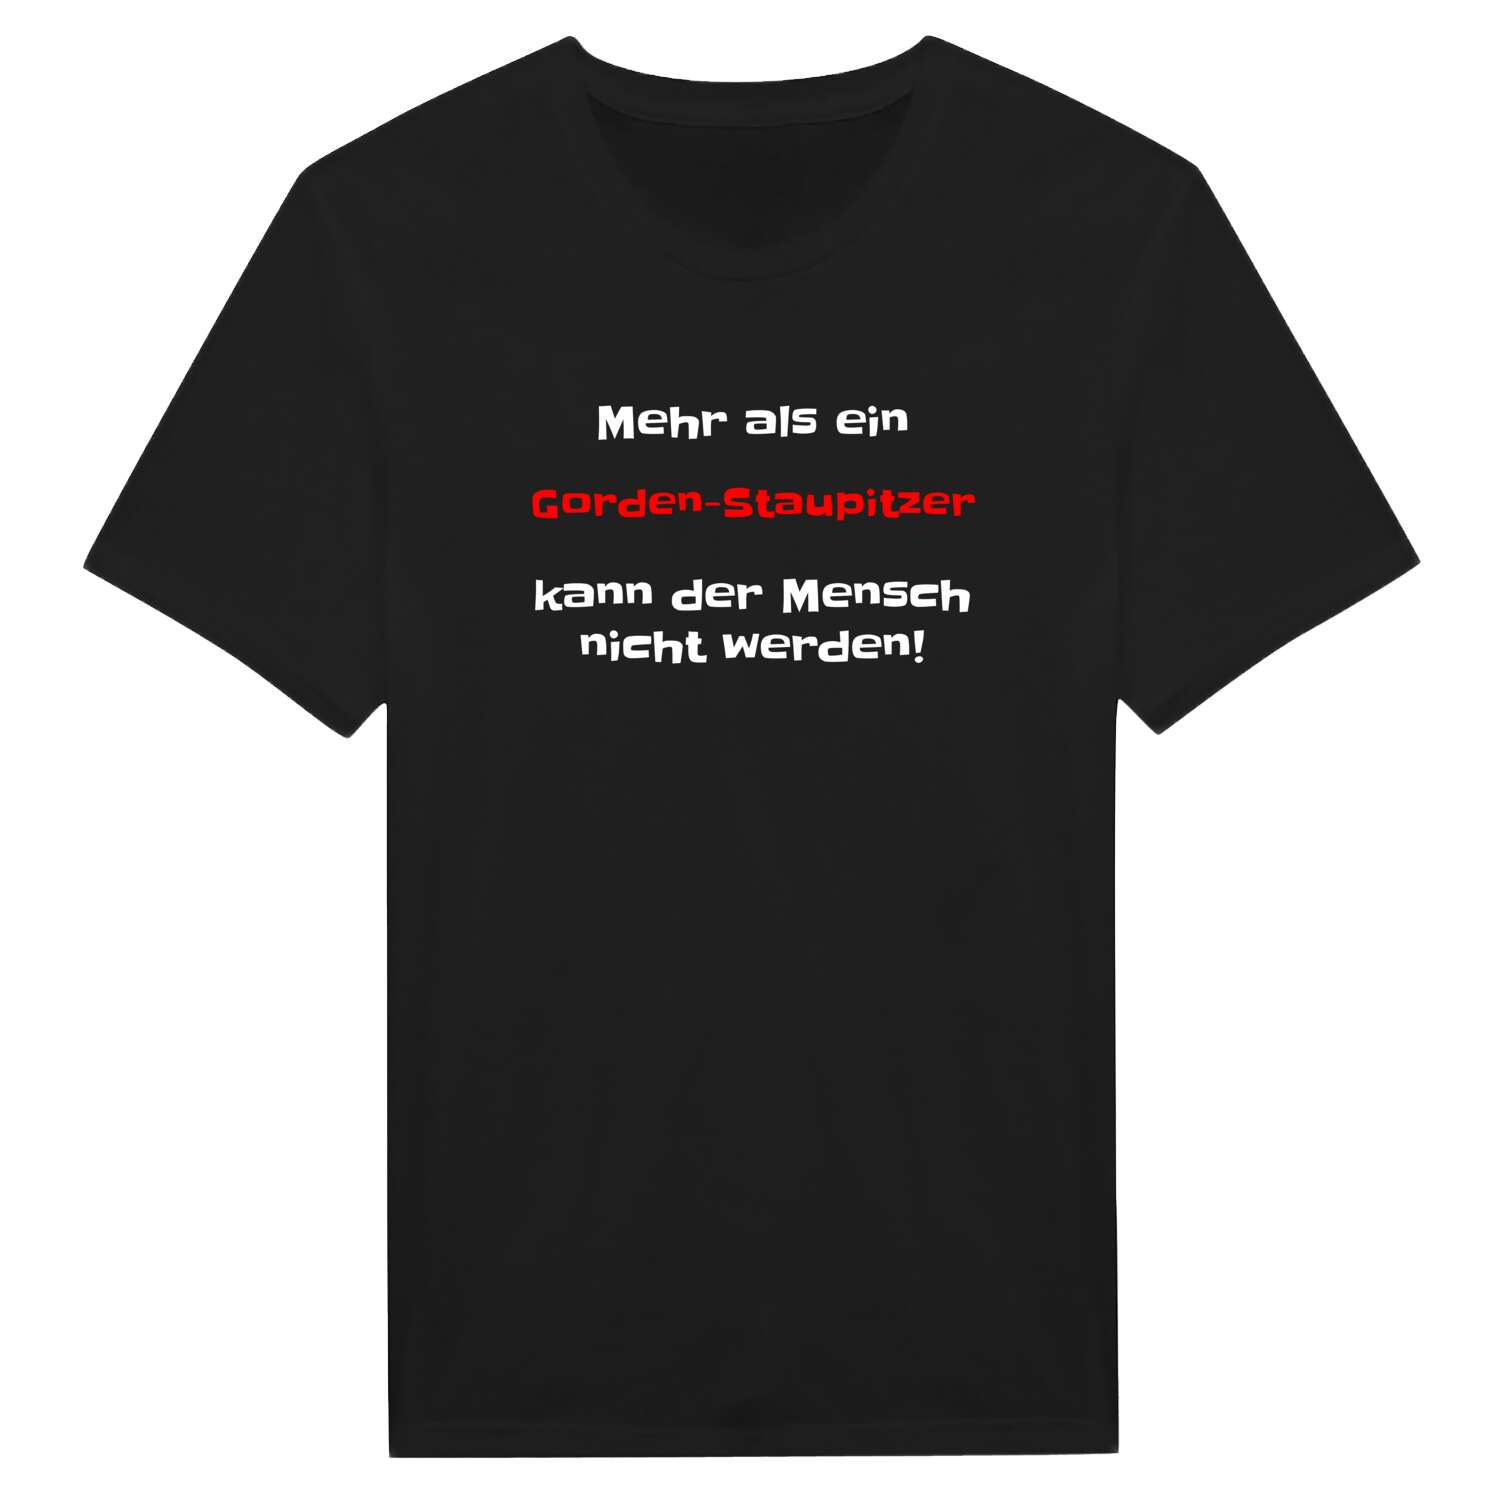 Gorden-Staupitz T-Shirt »Mehr als ein«